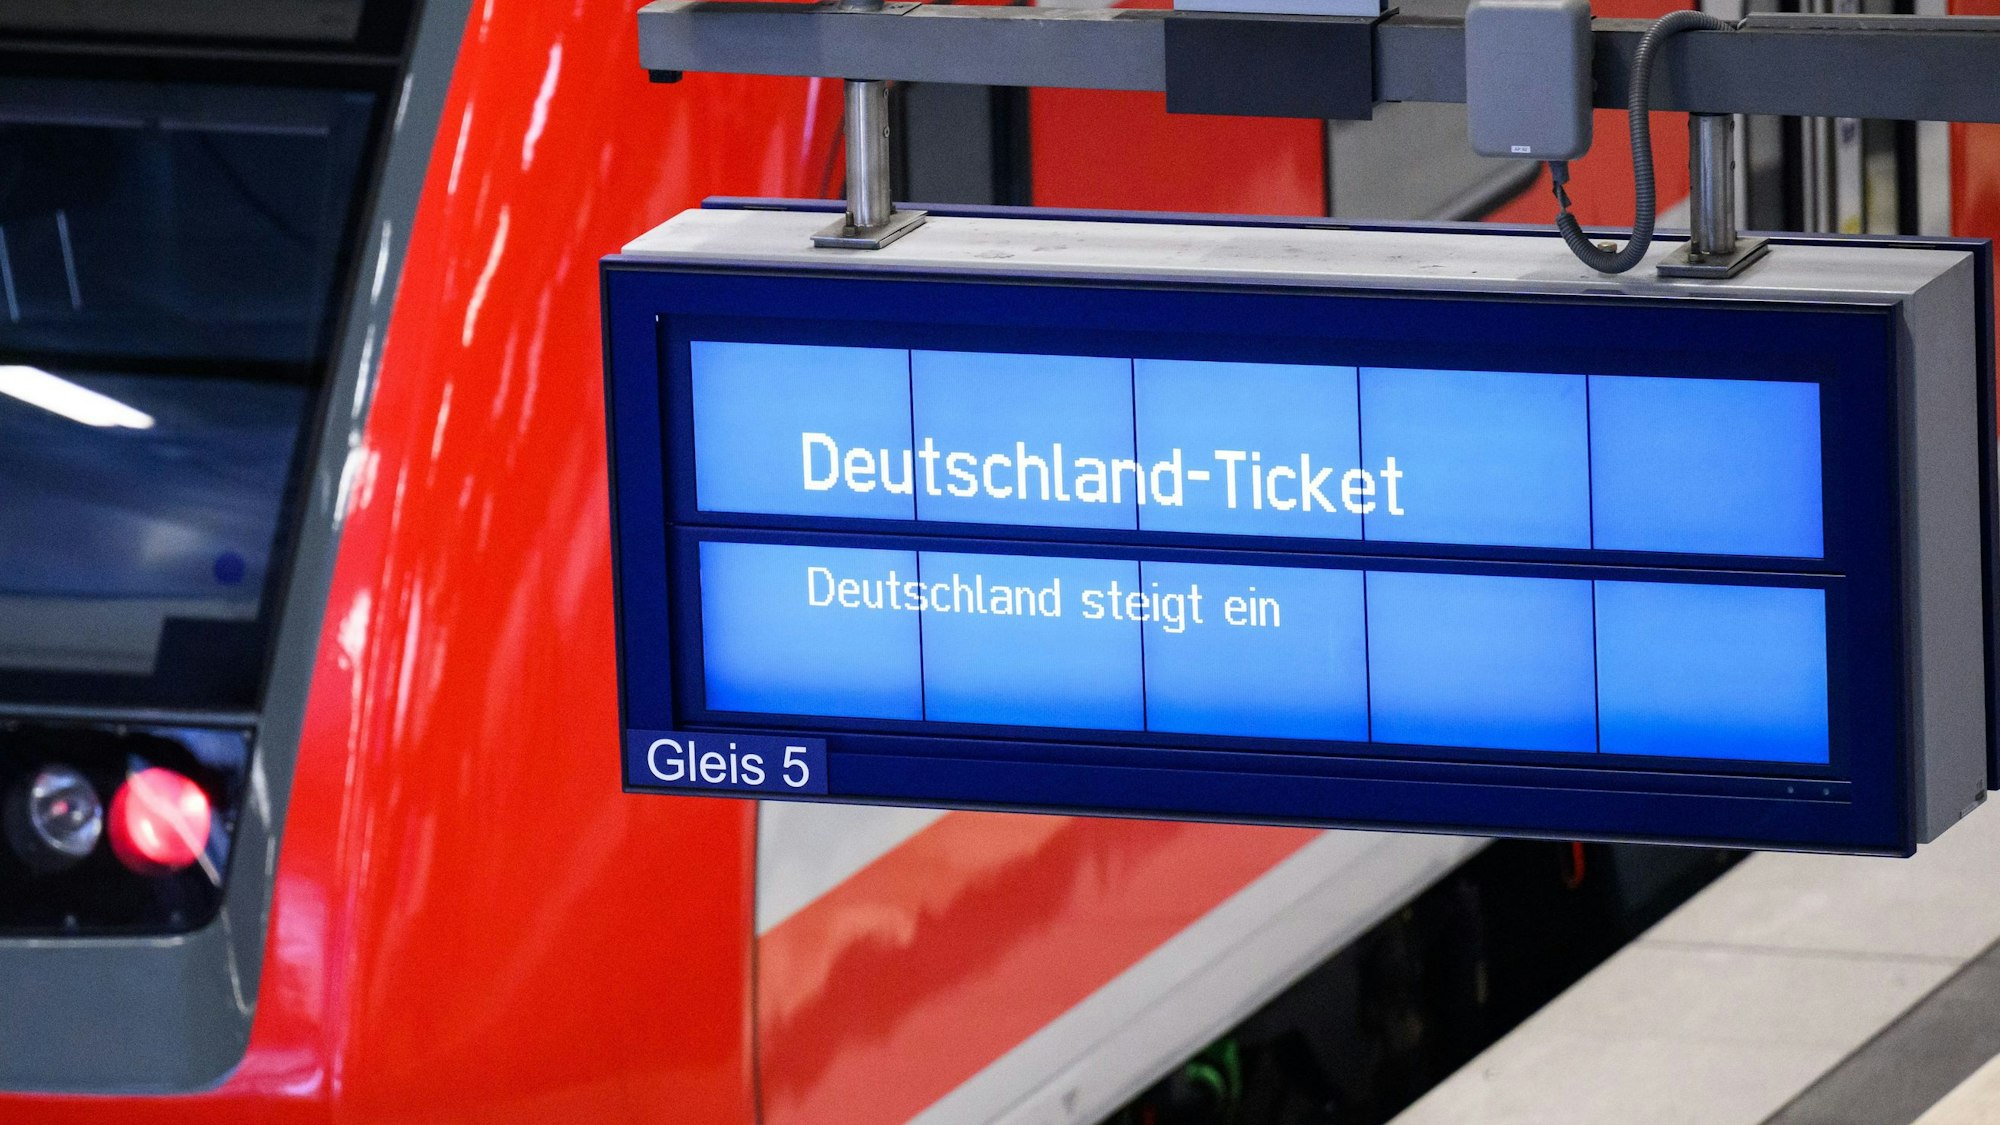 Auf einer Anzeige an einem Bahnhofsgleis steht groß „Deutschland-Ticket“. Im Hintergrund ist ein rot-weißer Regionalzug der Deutschen Bahn zu sehen.